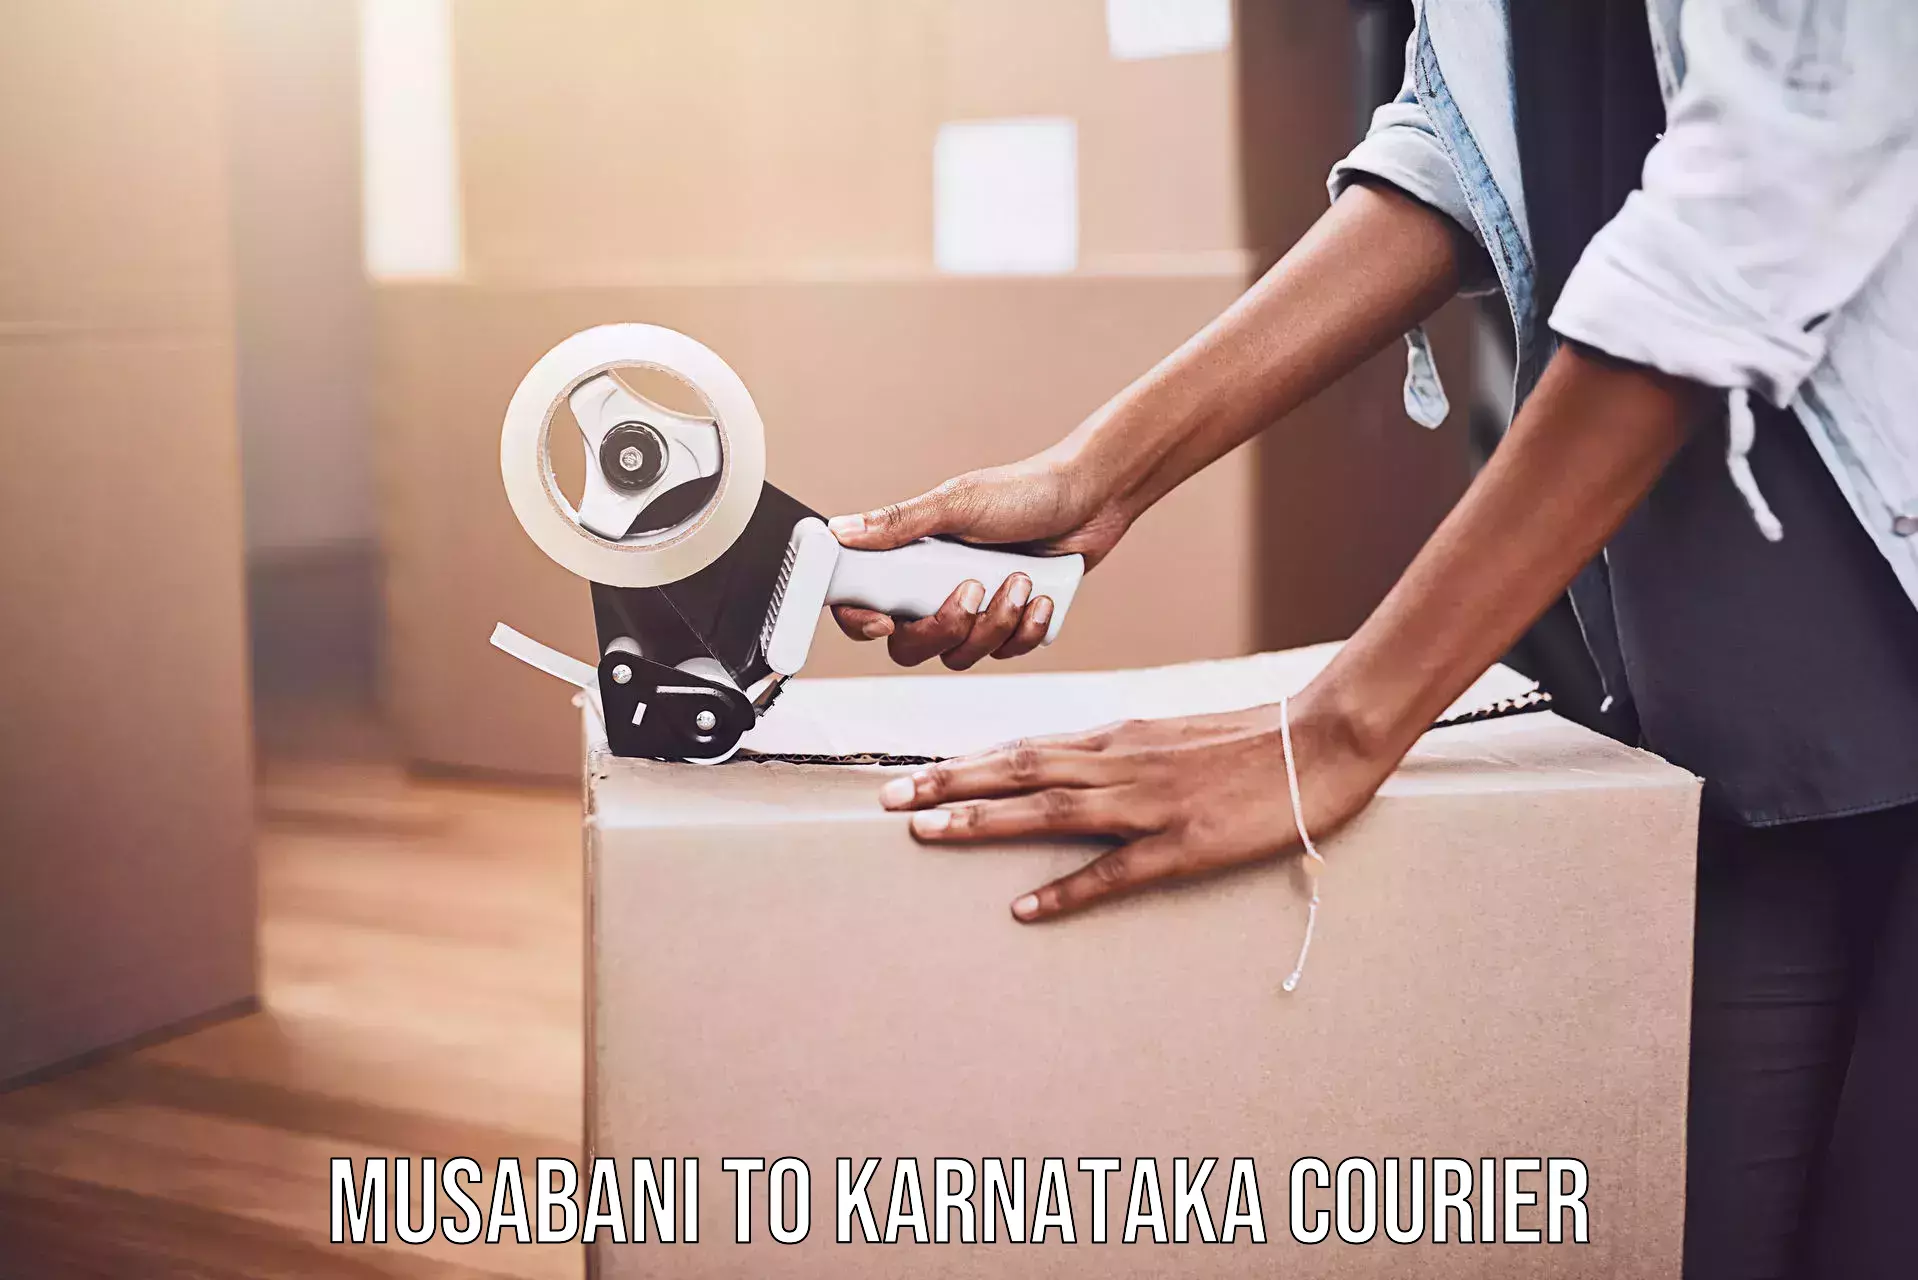 Premium courier solutions in Musabani to Karnataka